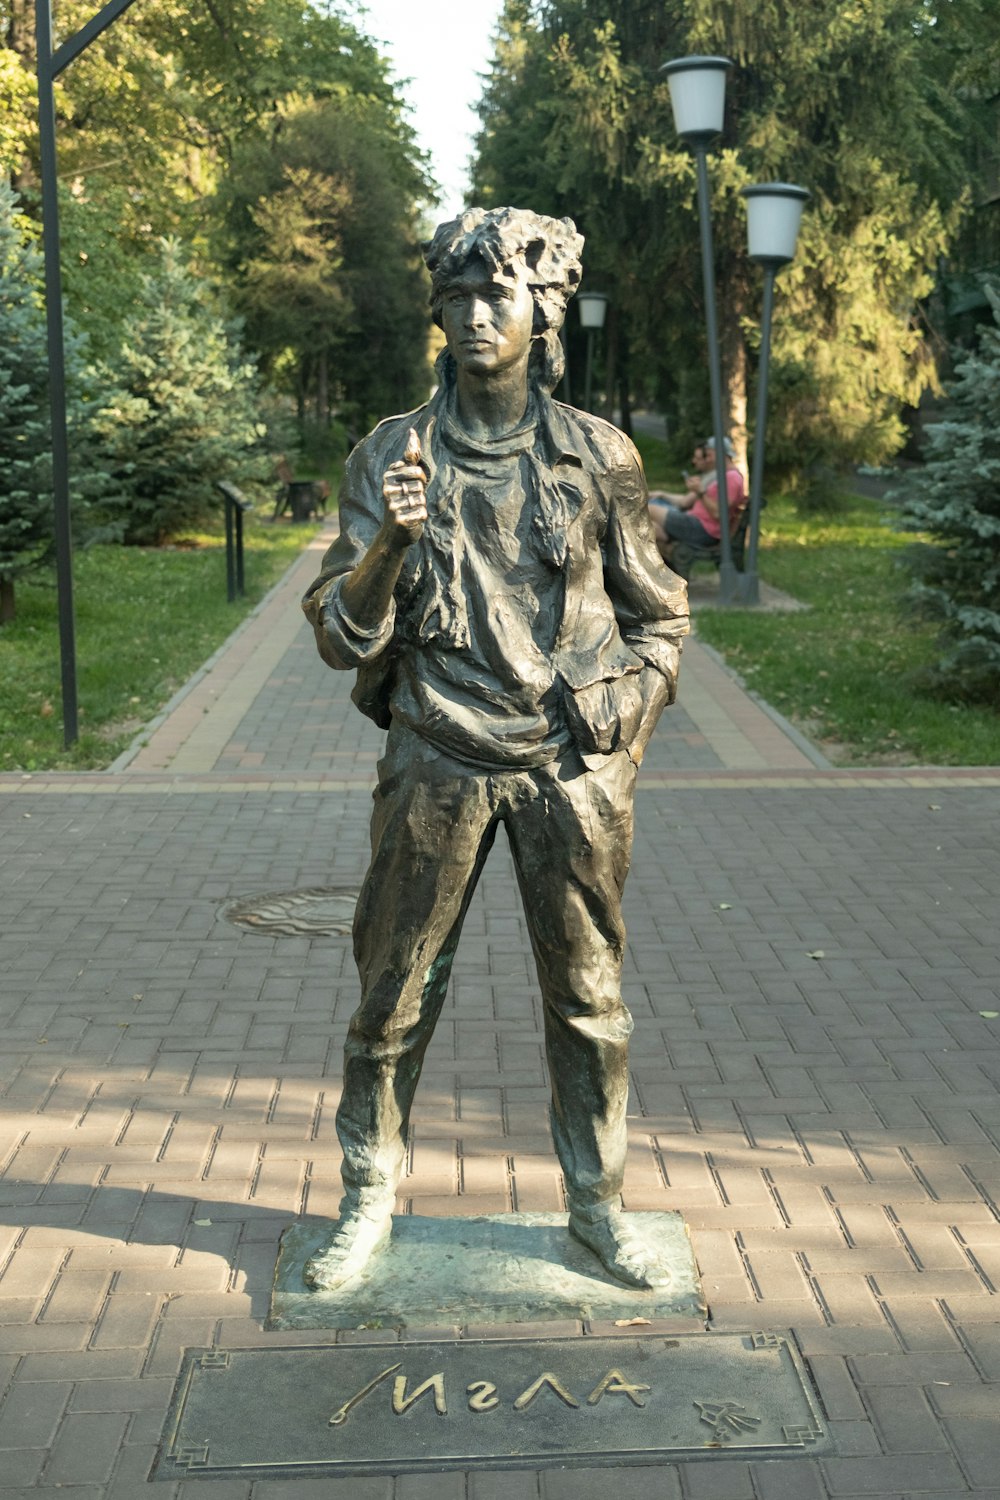 a bronze statue of a man holding a baseball bat